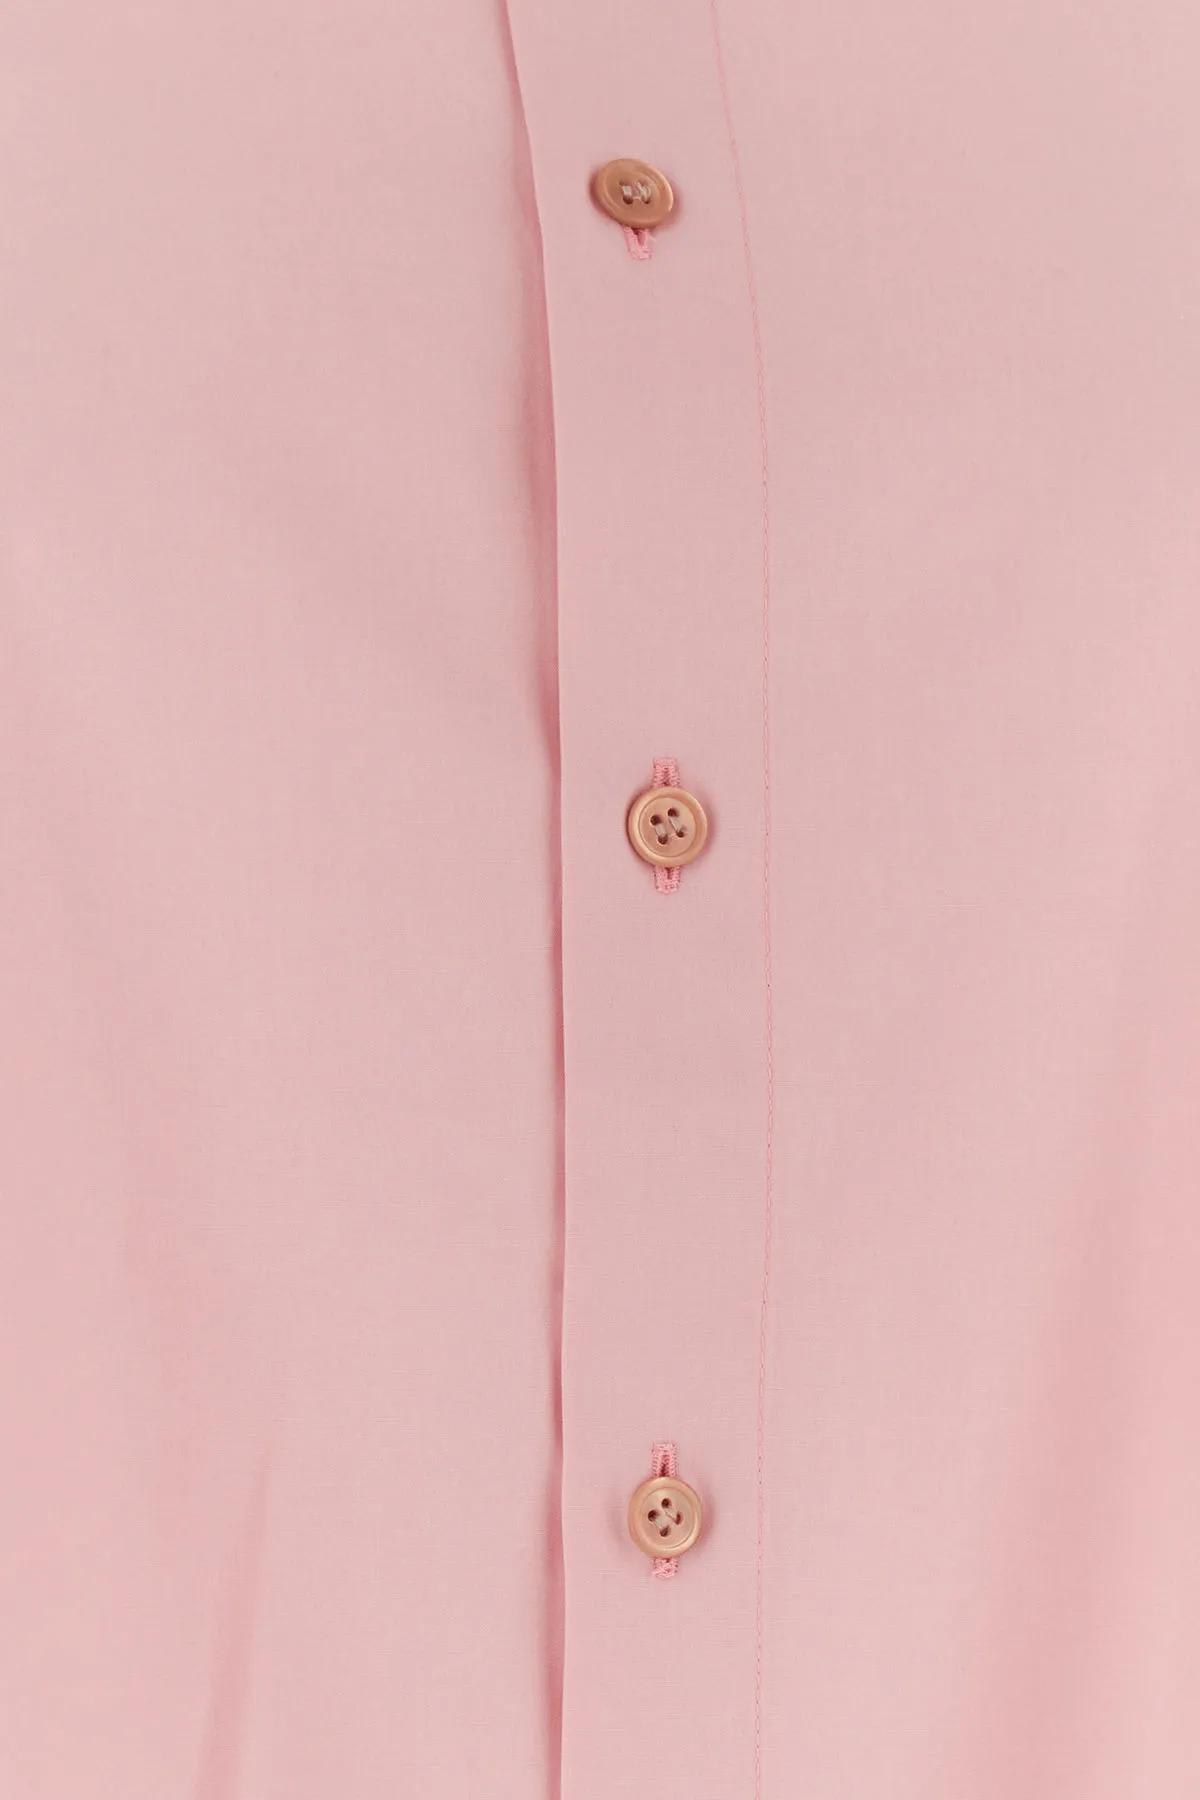 Shop Marni Pink Poplin Shirt